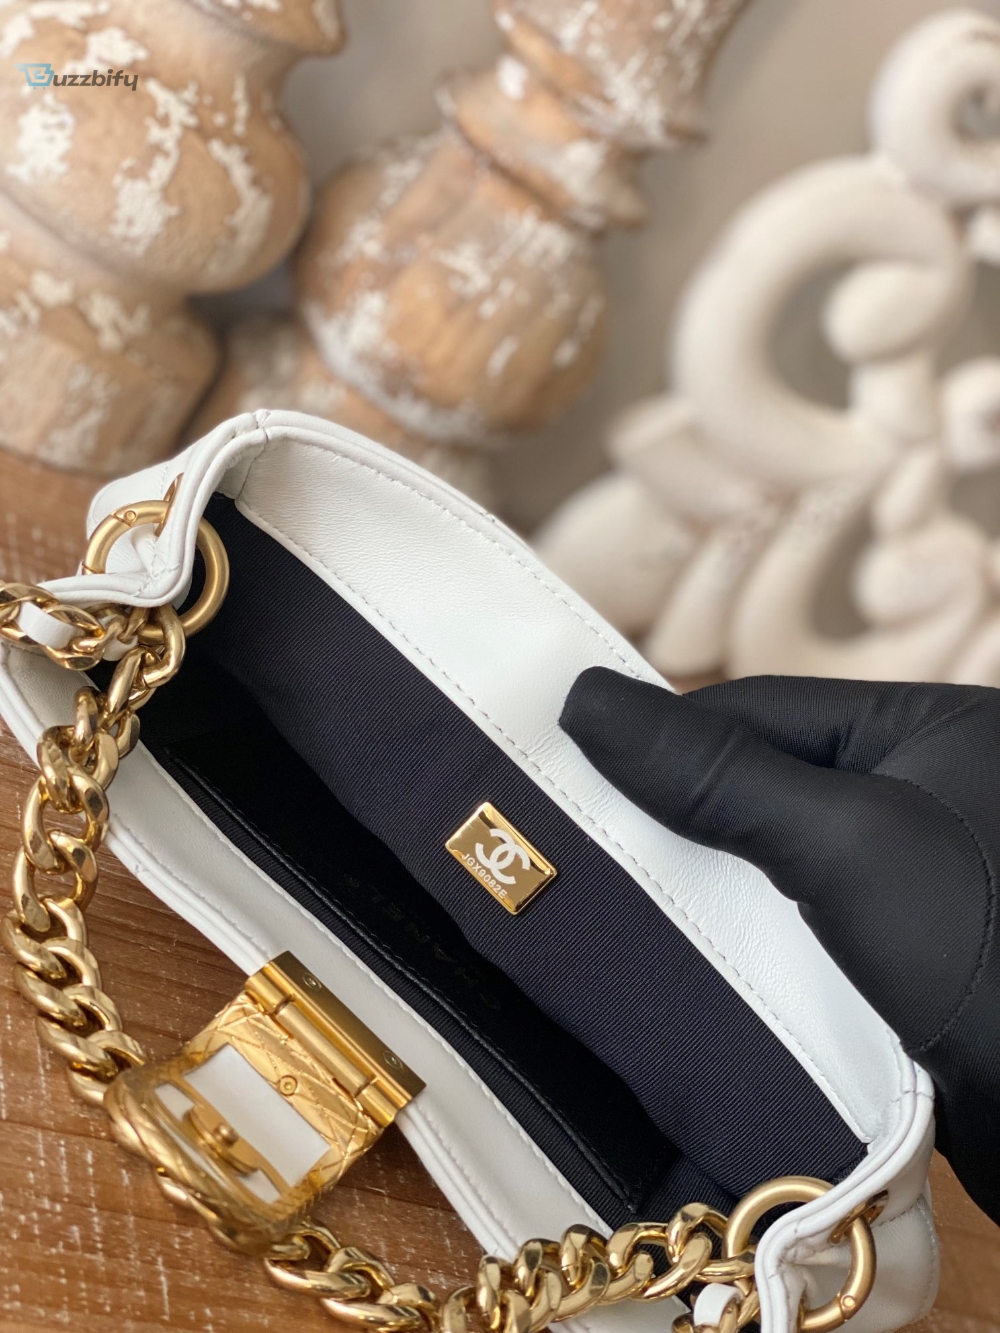 Chanel Small Hobo Bag Gold Hardware White For Women, Women’s Handbags, Shoulder Bags